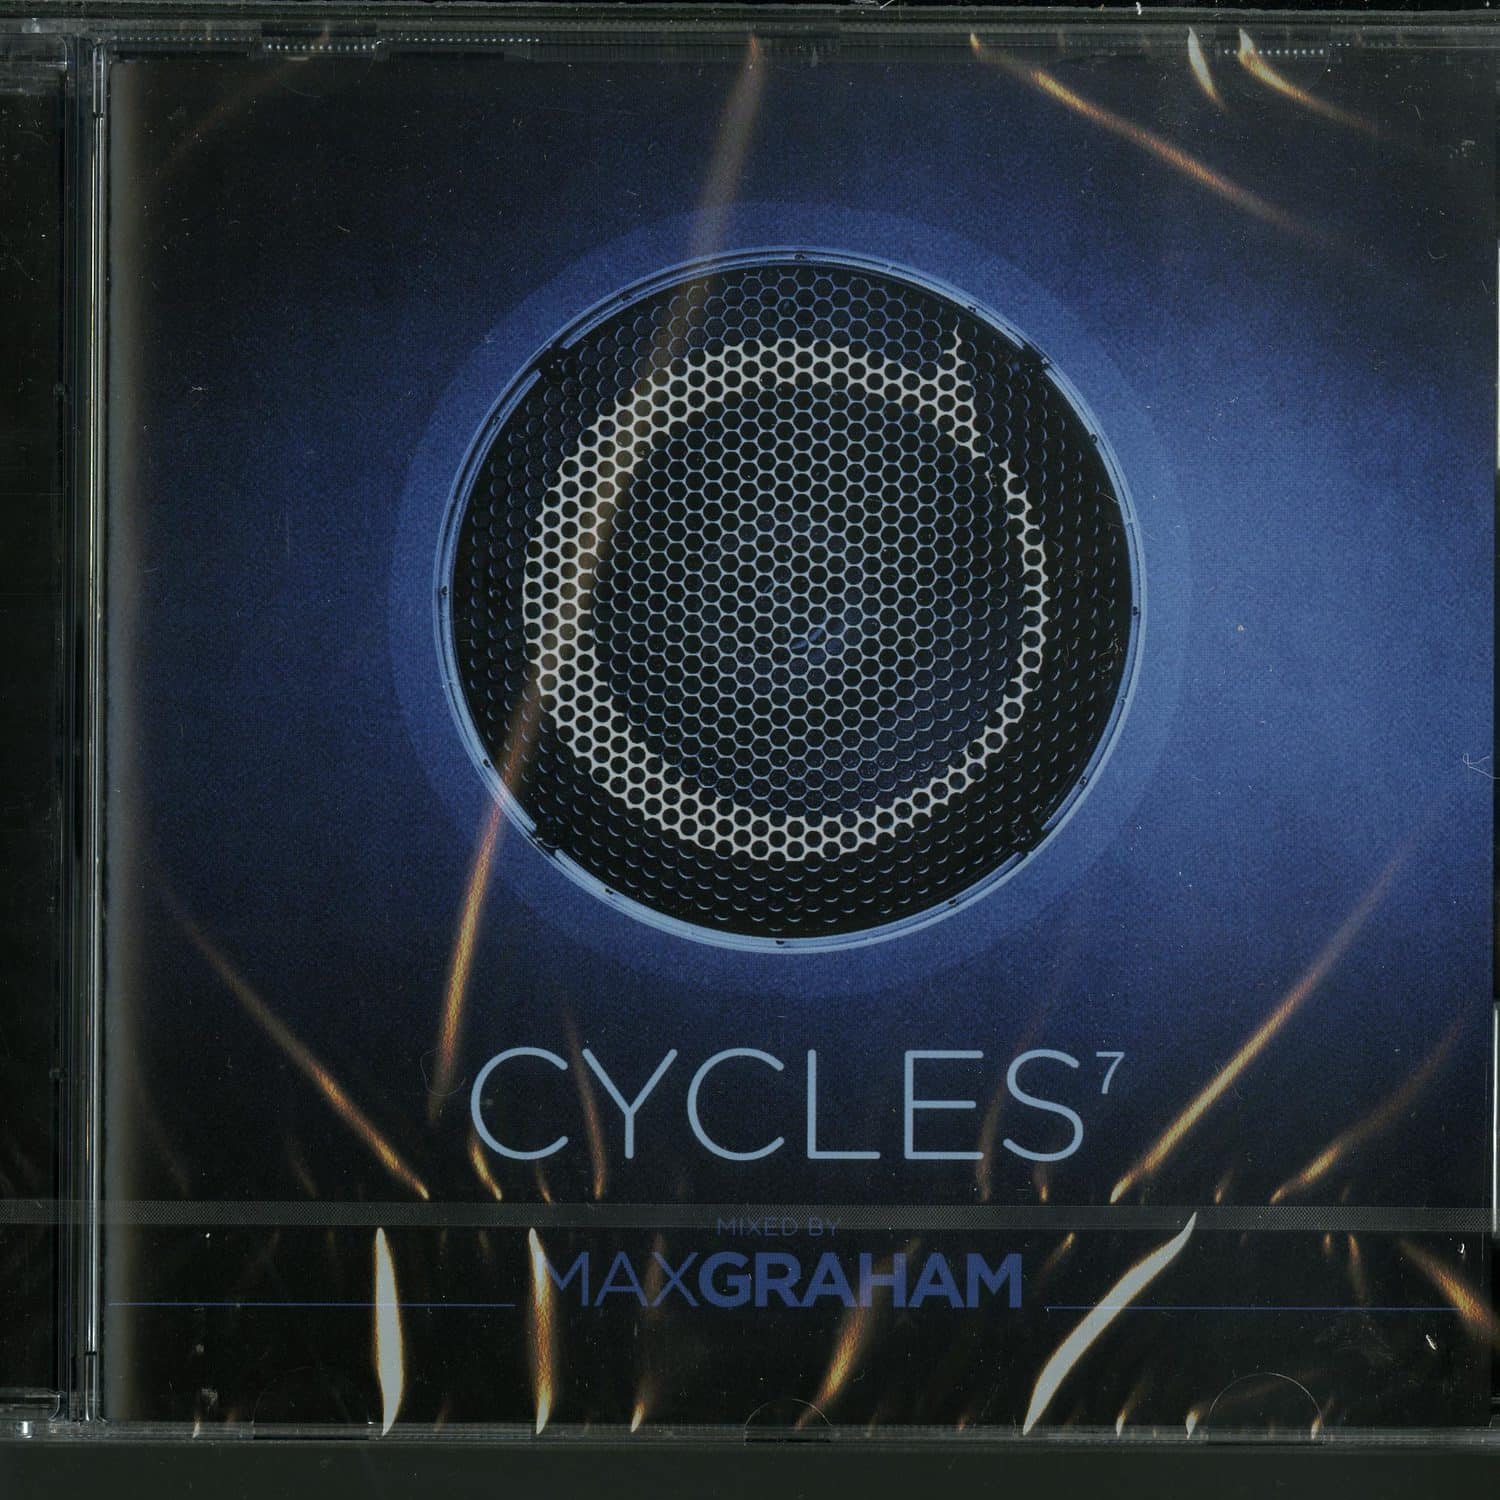 Max Graham - CYCLES 7 